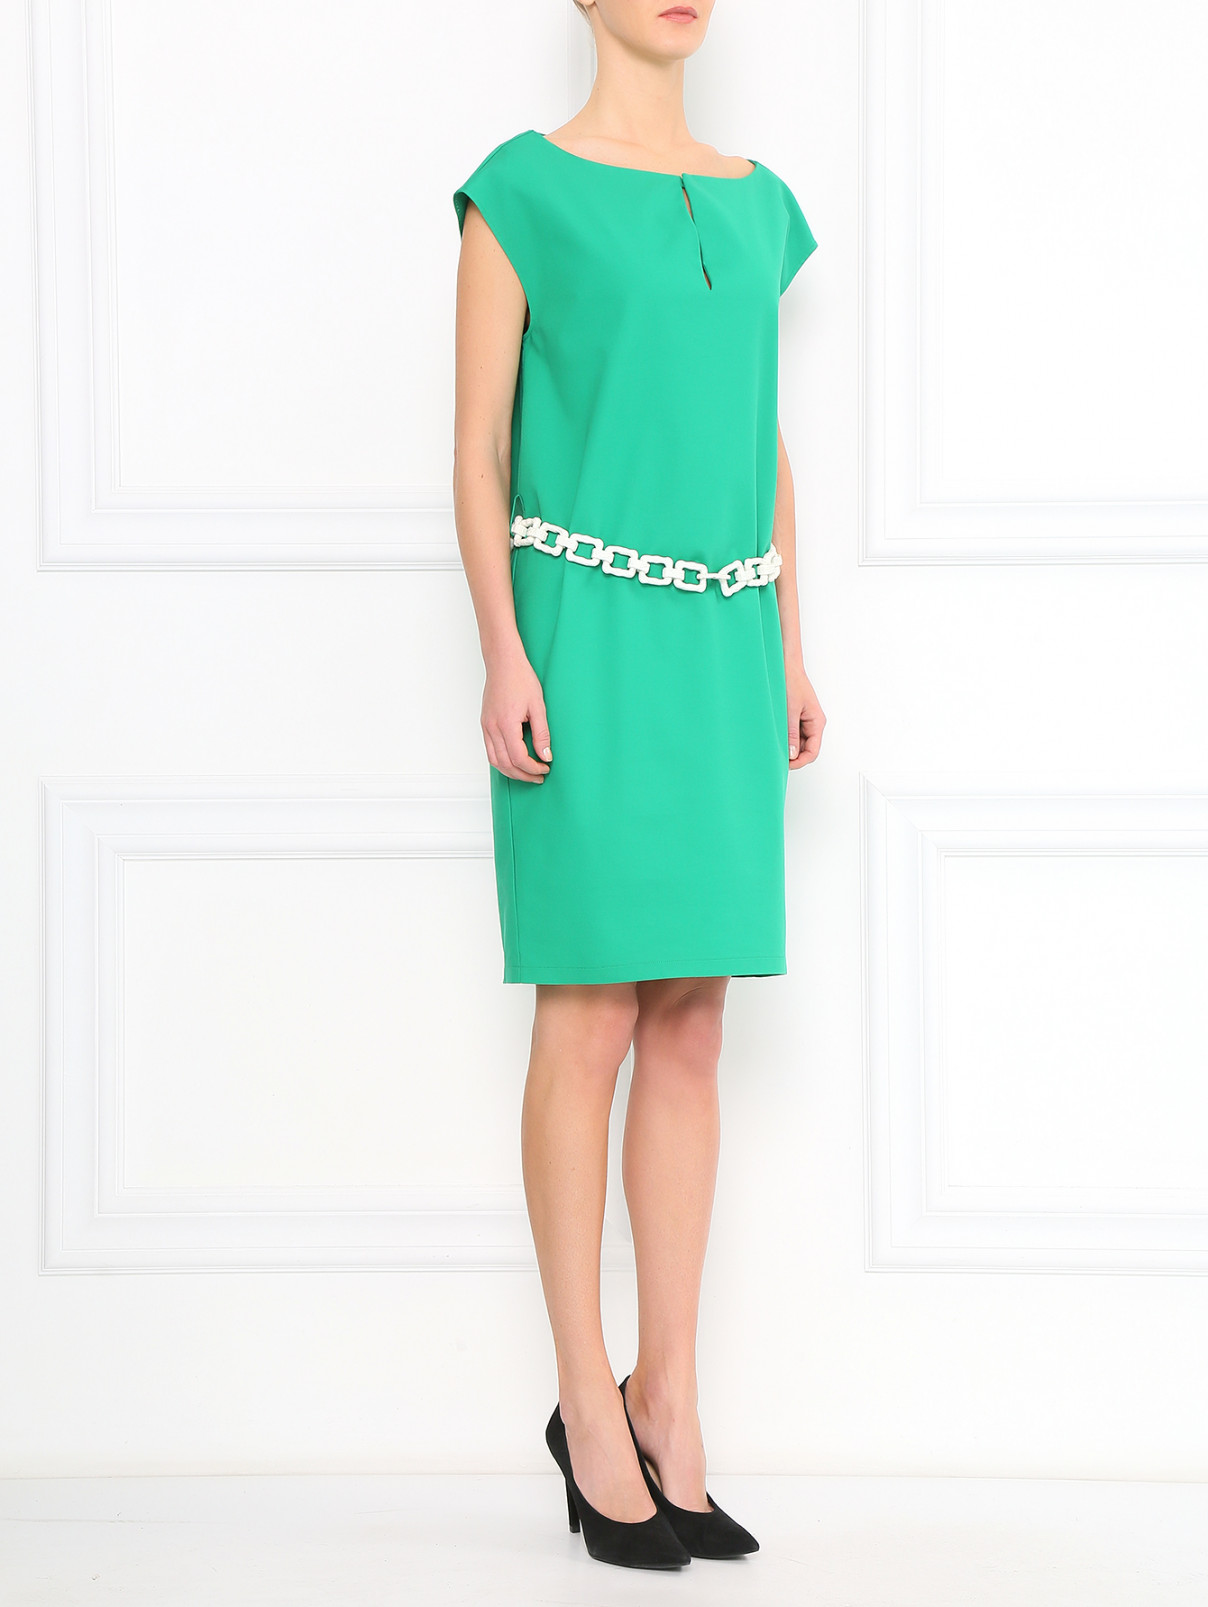 Платье свободного фасона из хлопка с поясом-цепь Moschino  –  Модель Общий вид  – Цвет:  Зеленый